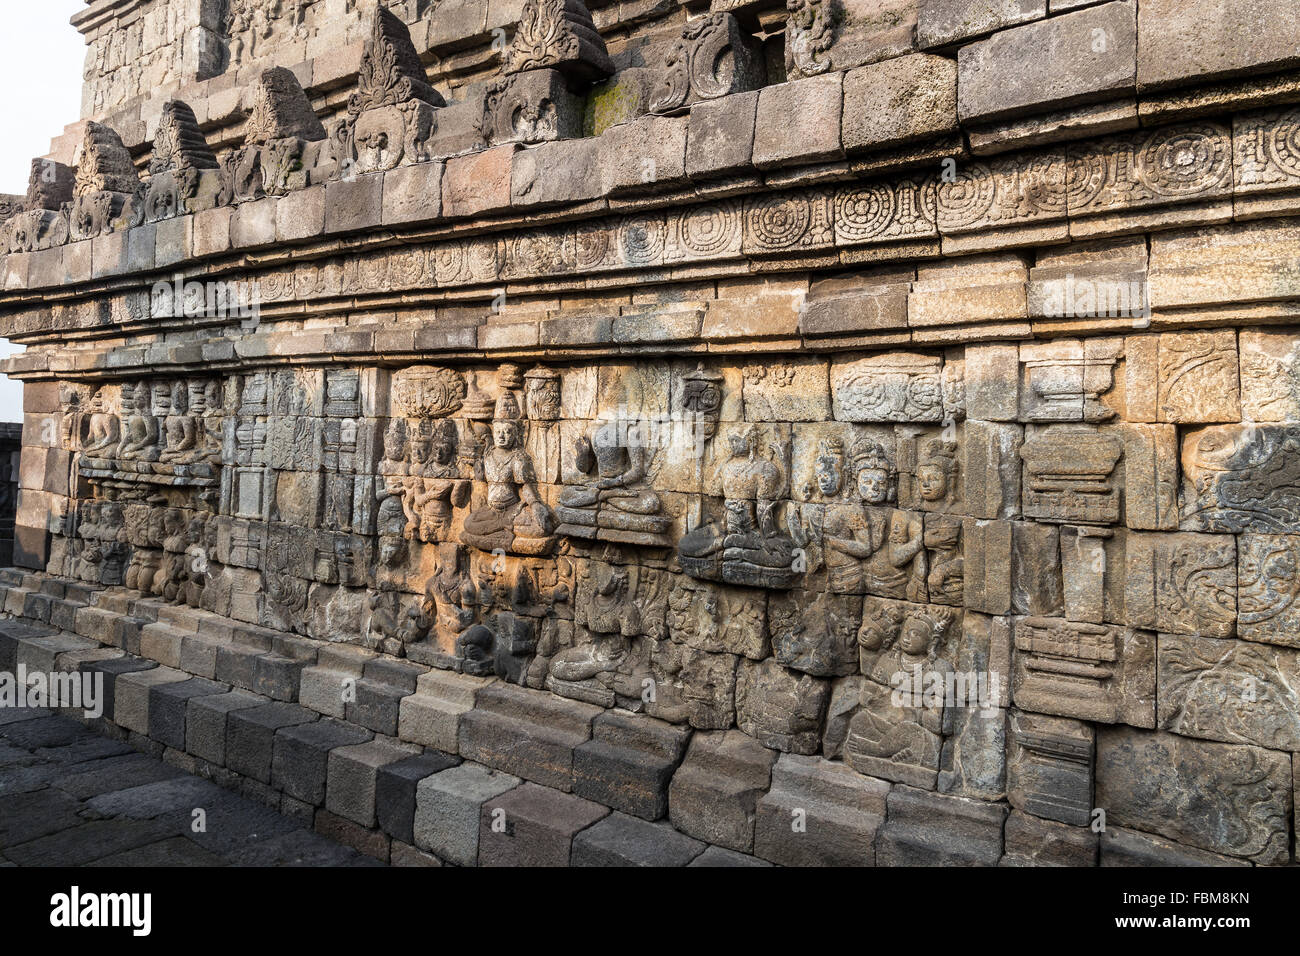 Die Relieftafeln des Borobudur-Tempels in Indonesien. Borobudur ist der größte buddhistische Tempel der Welt. Stockfoto